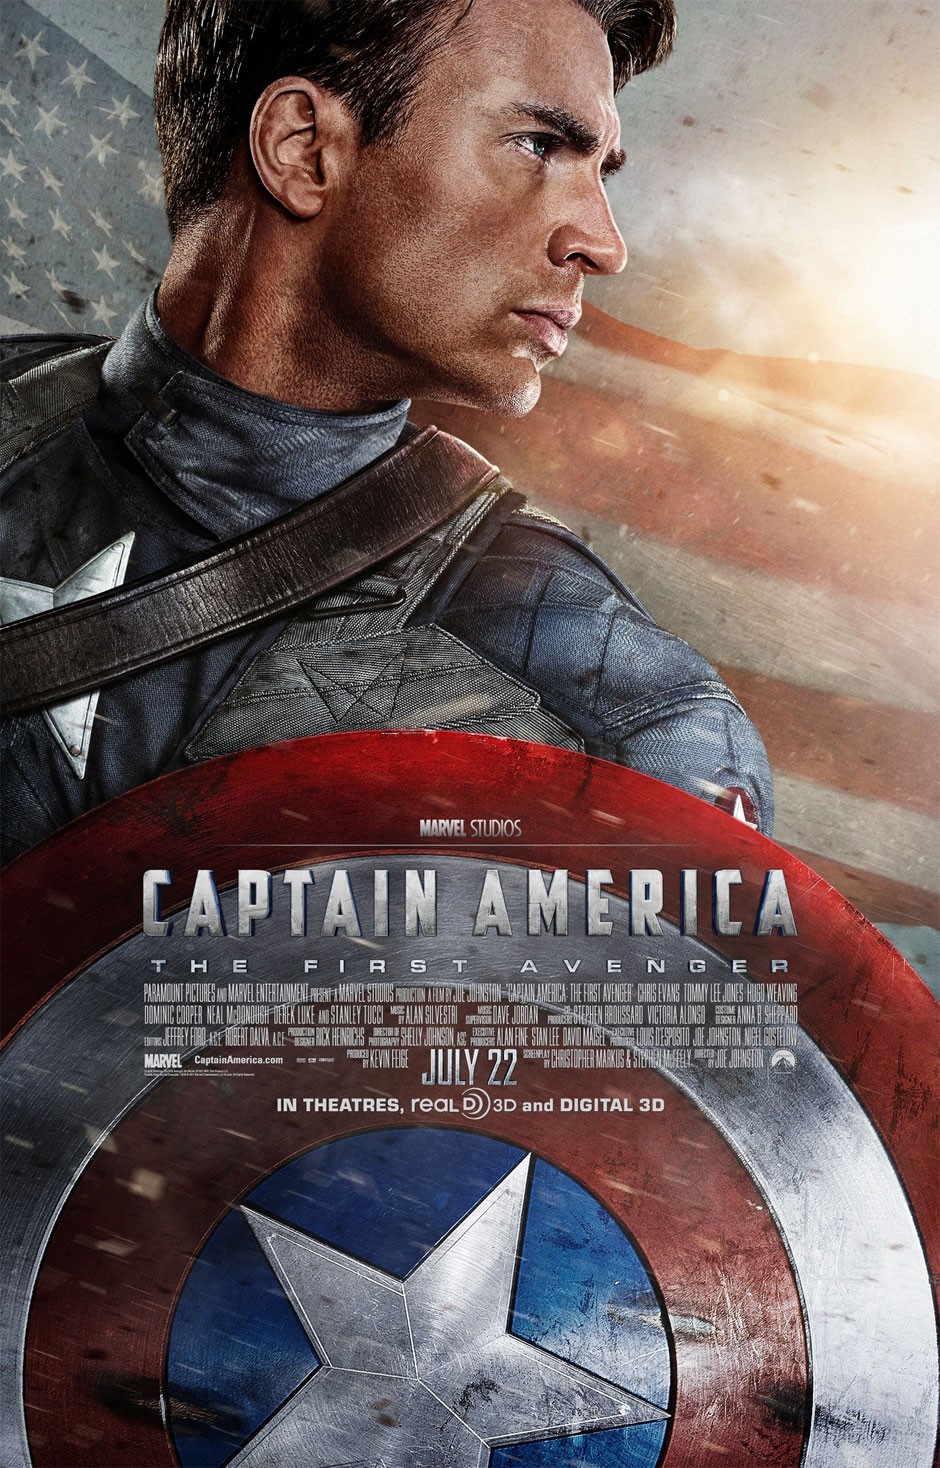 Captain America The First Avenger 2011 Movie Poster E1310160831212 